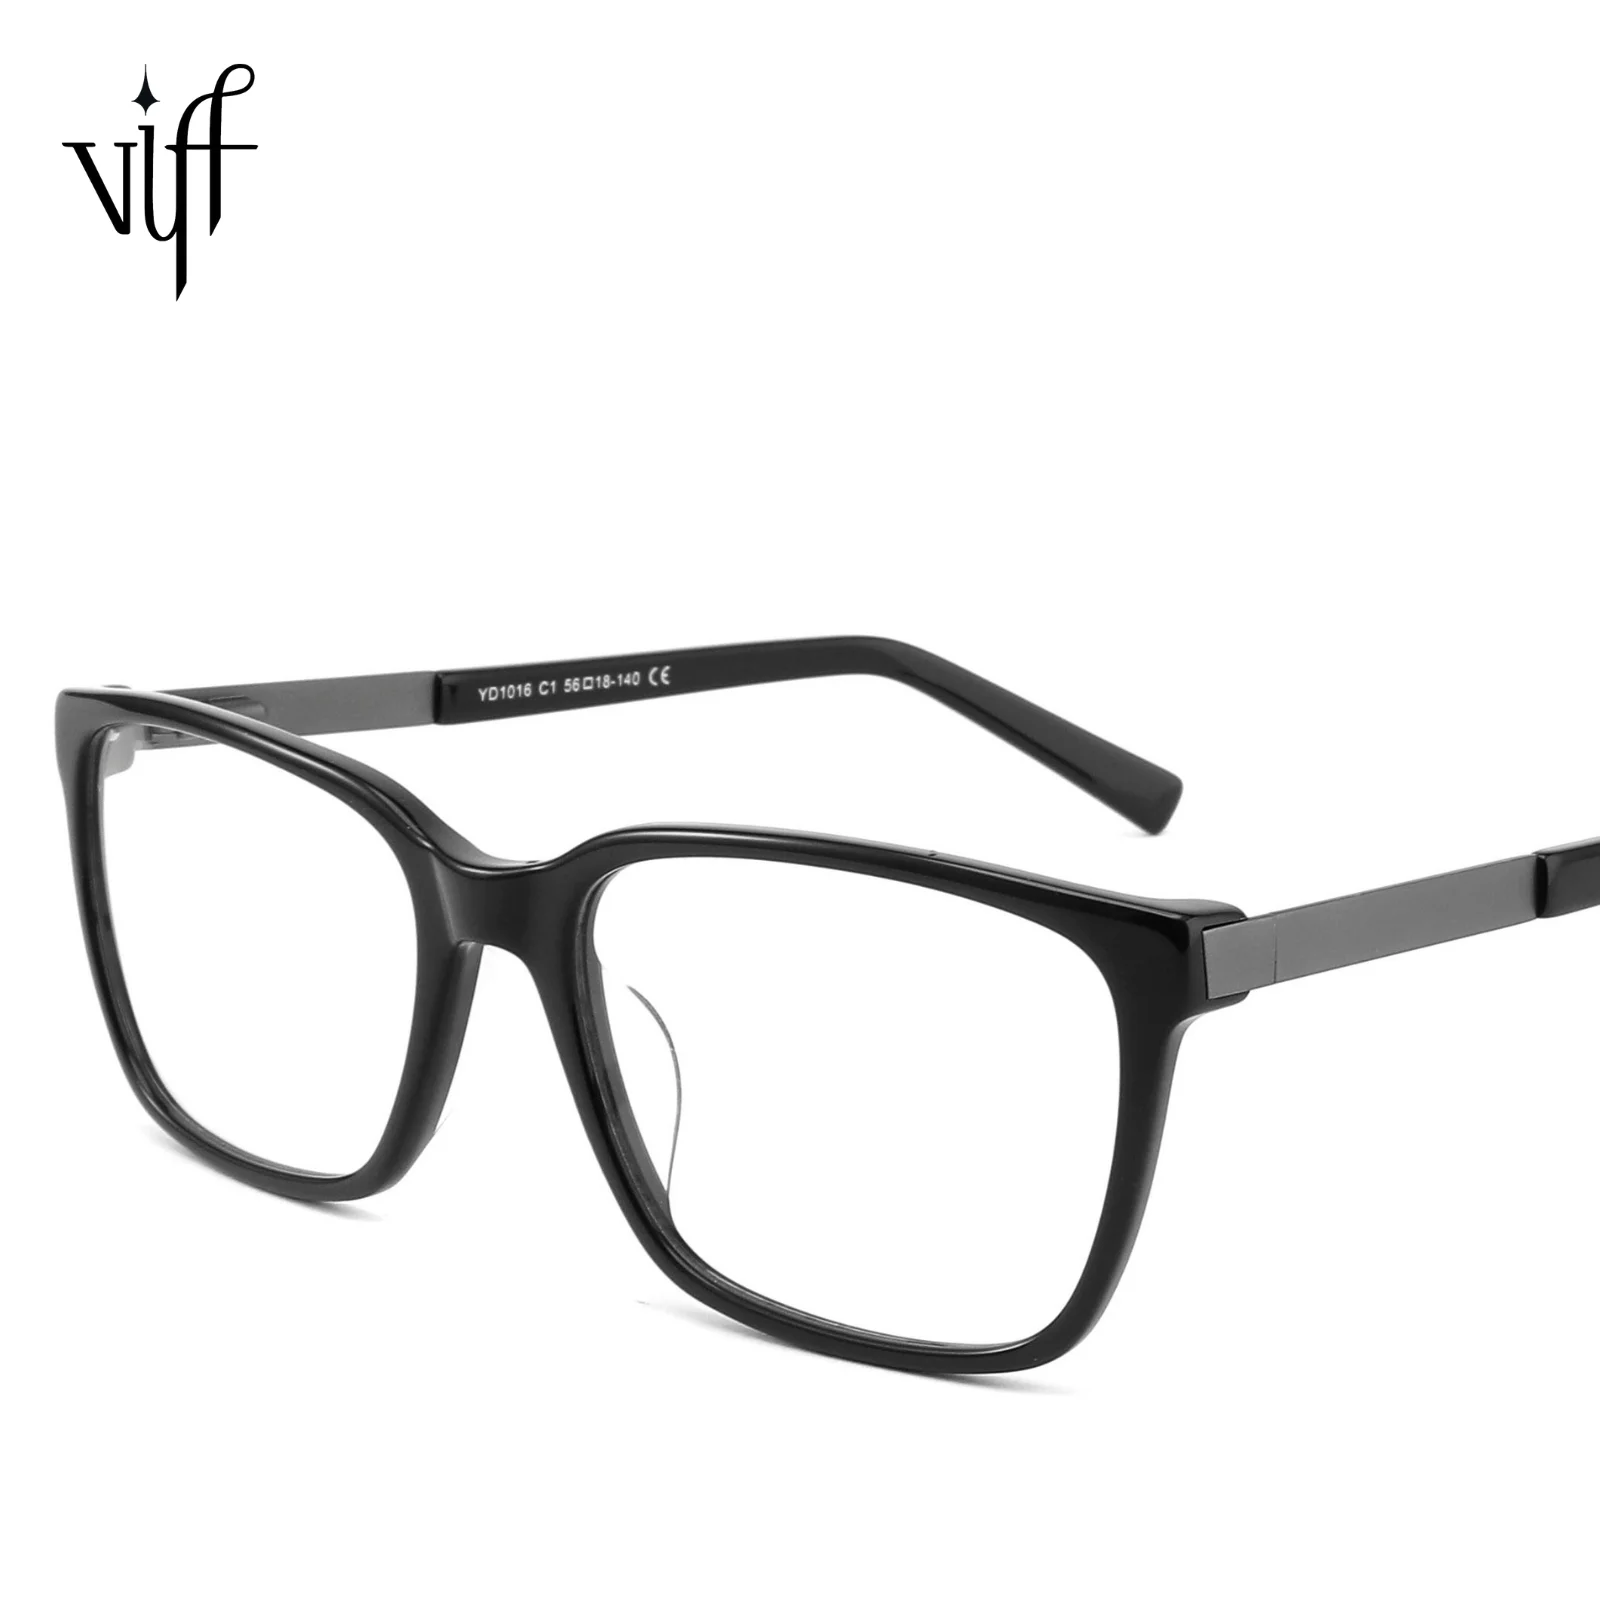 

VIFF HA1016 Eyeglasses Fashion Opticals Woman Glasses High Quality Acetate Fashion Optical Frame Cellulose Acetate Sunglasses